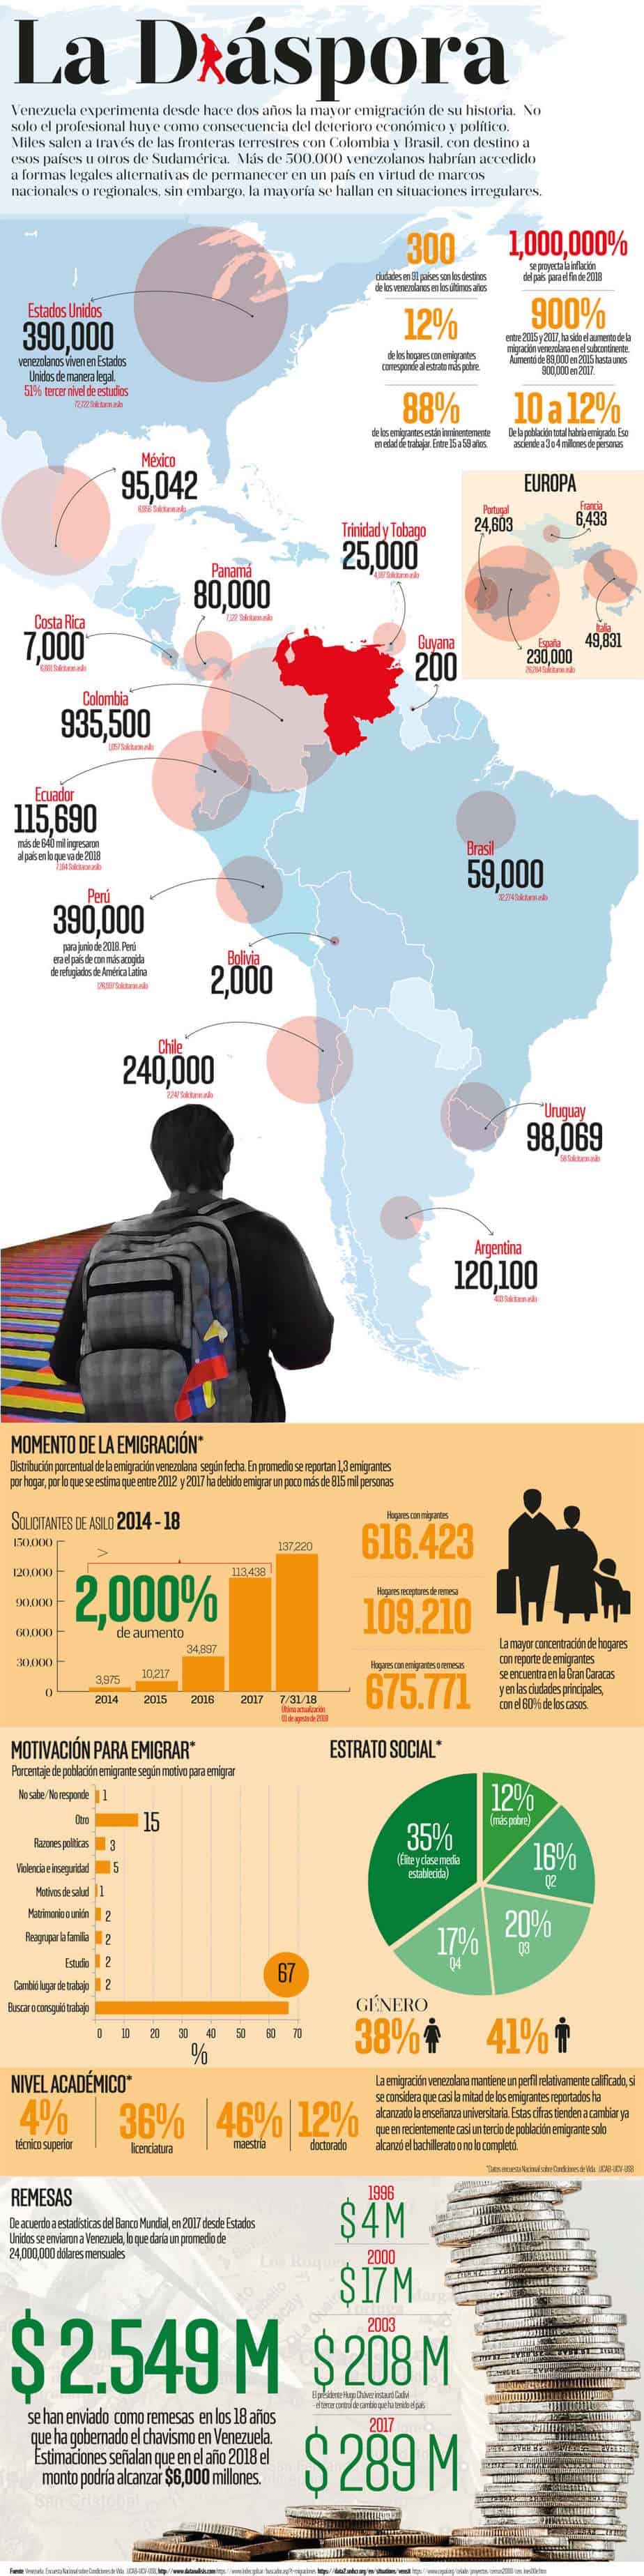 Infografía sobre la diáspora de venezolanos